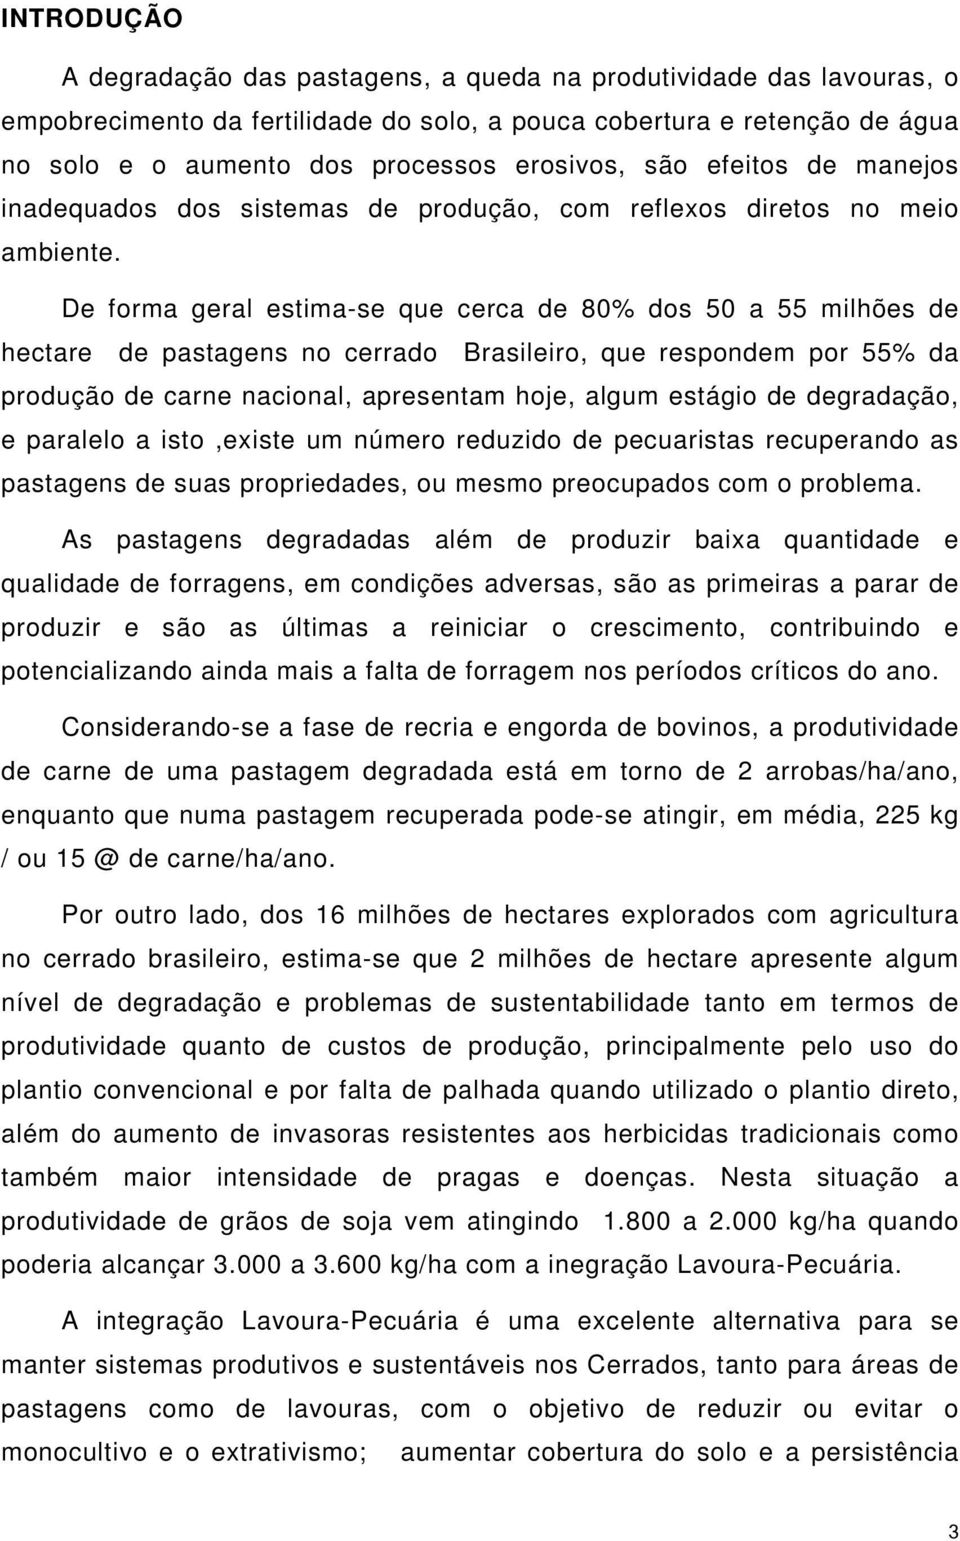 De forma geral estima-se que cerca de 80% dos 50 a 55 milhões de hectare de pastagens no cerrado Brasileiro, que respondem por 55% da produção de carne nacional, apresentam hoje, algum estágio de